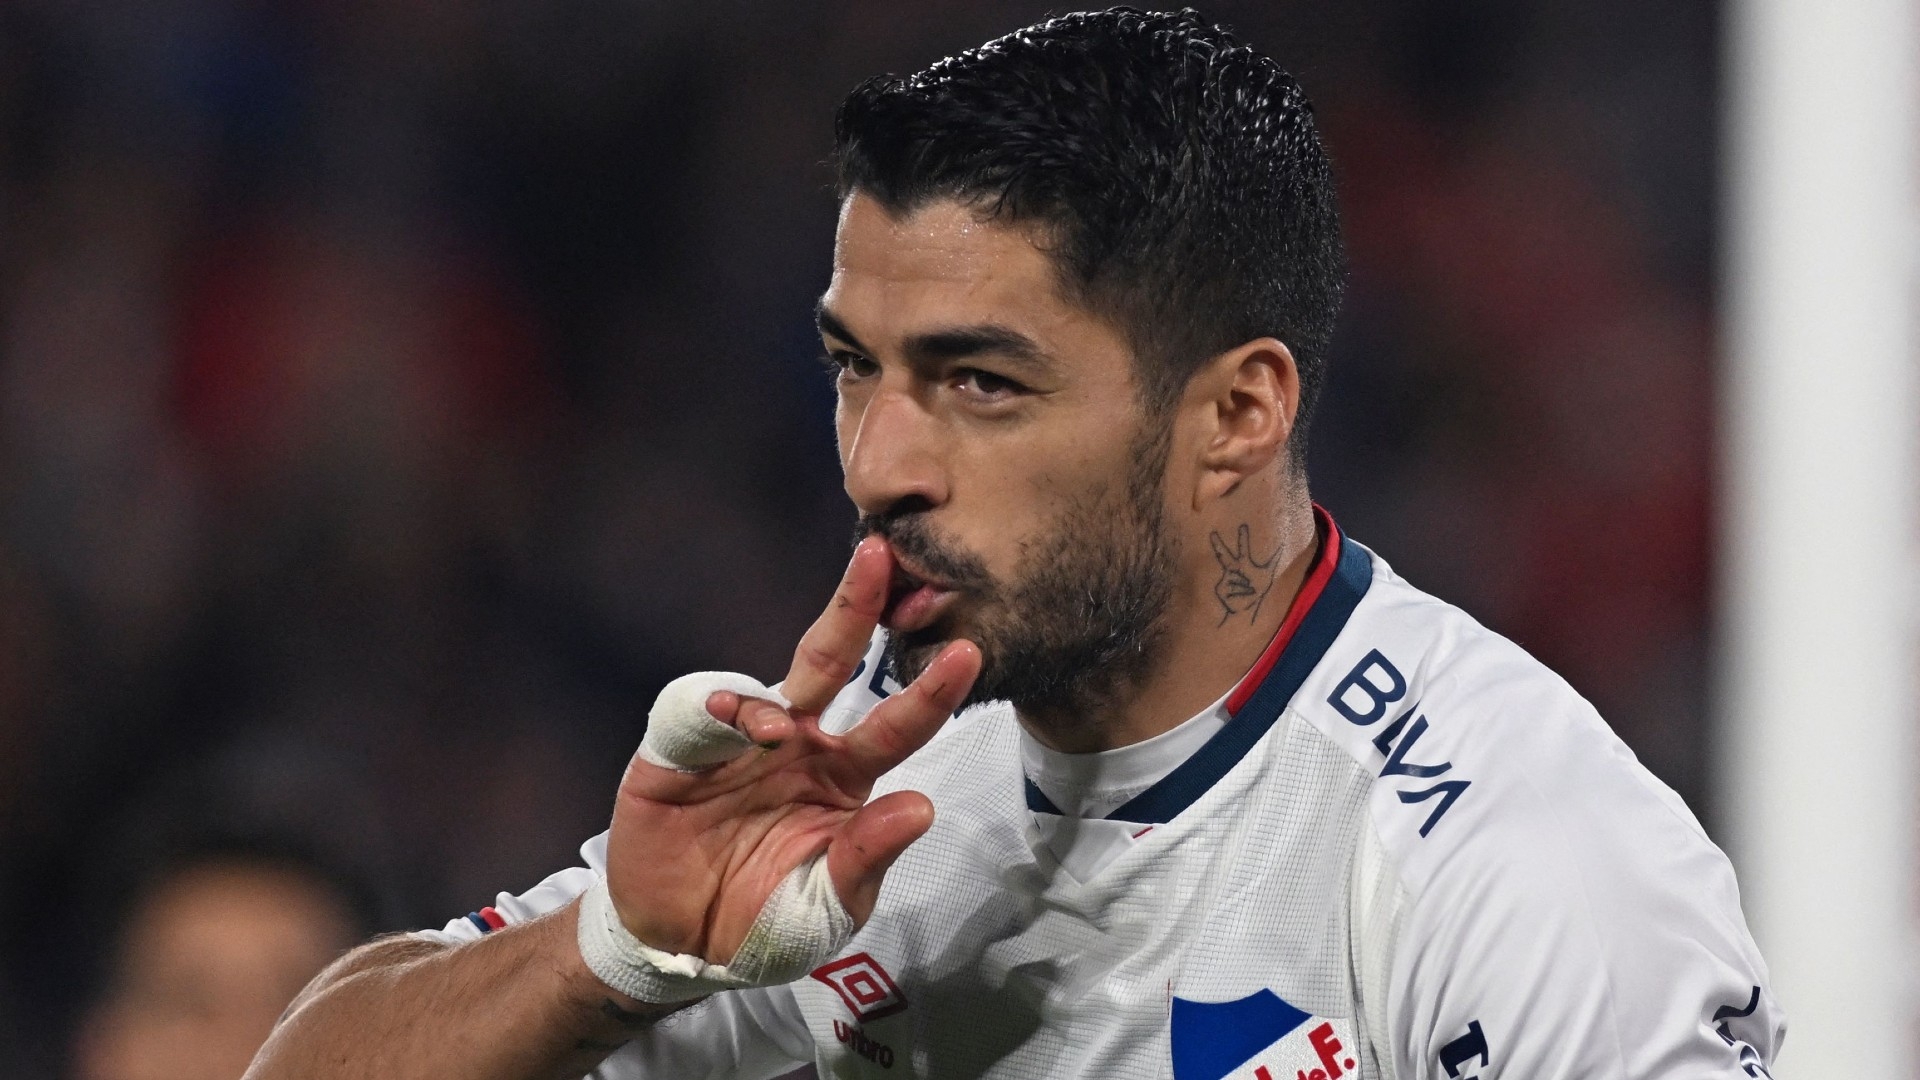 Luis Suarez kissing fingers